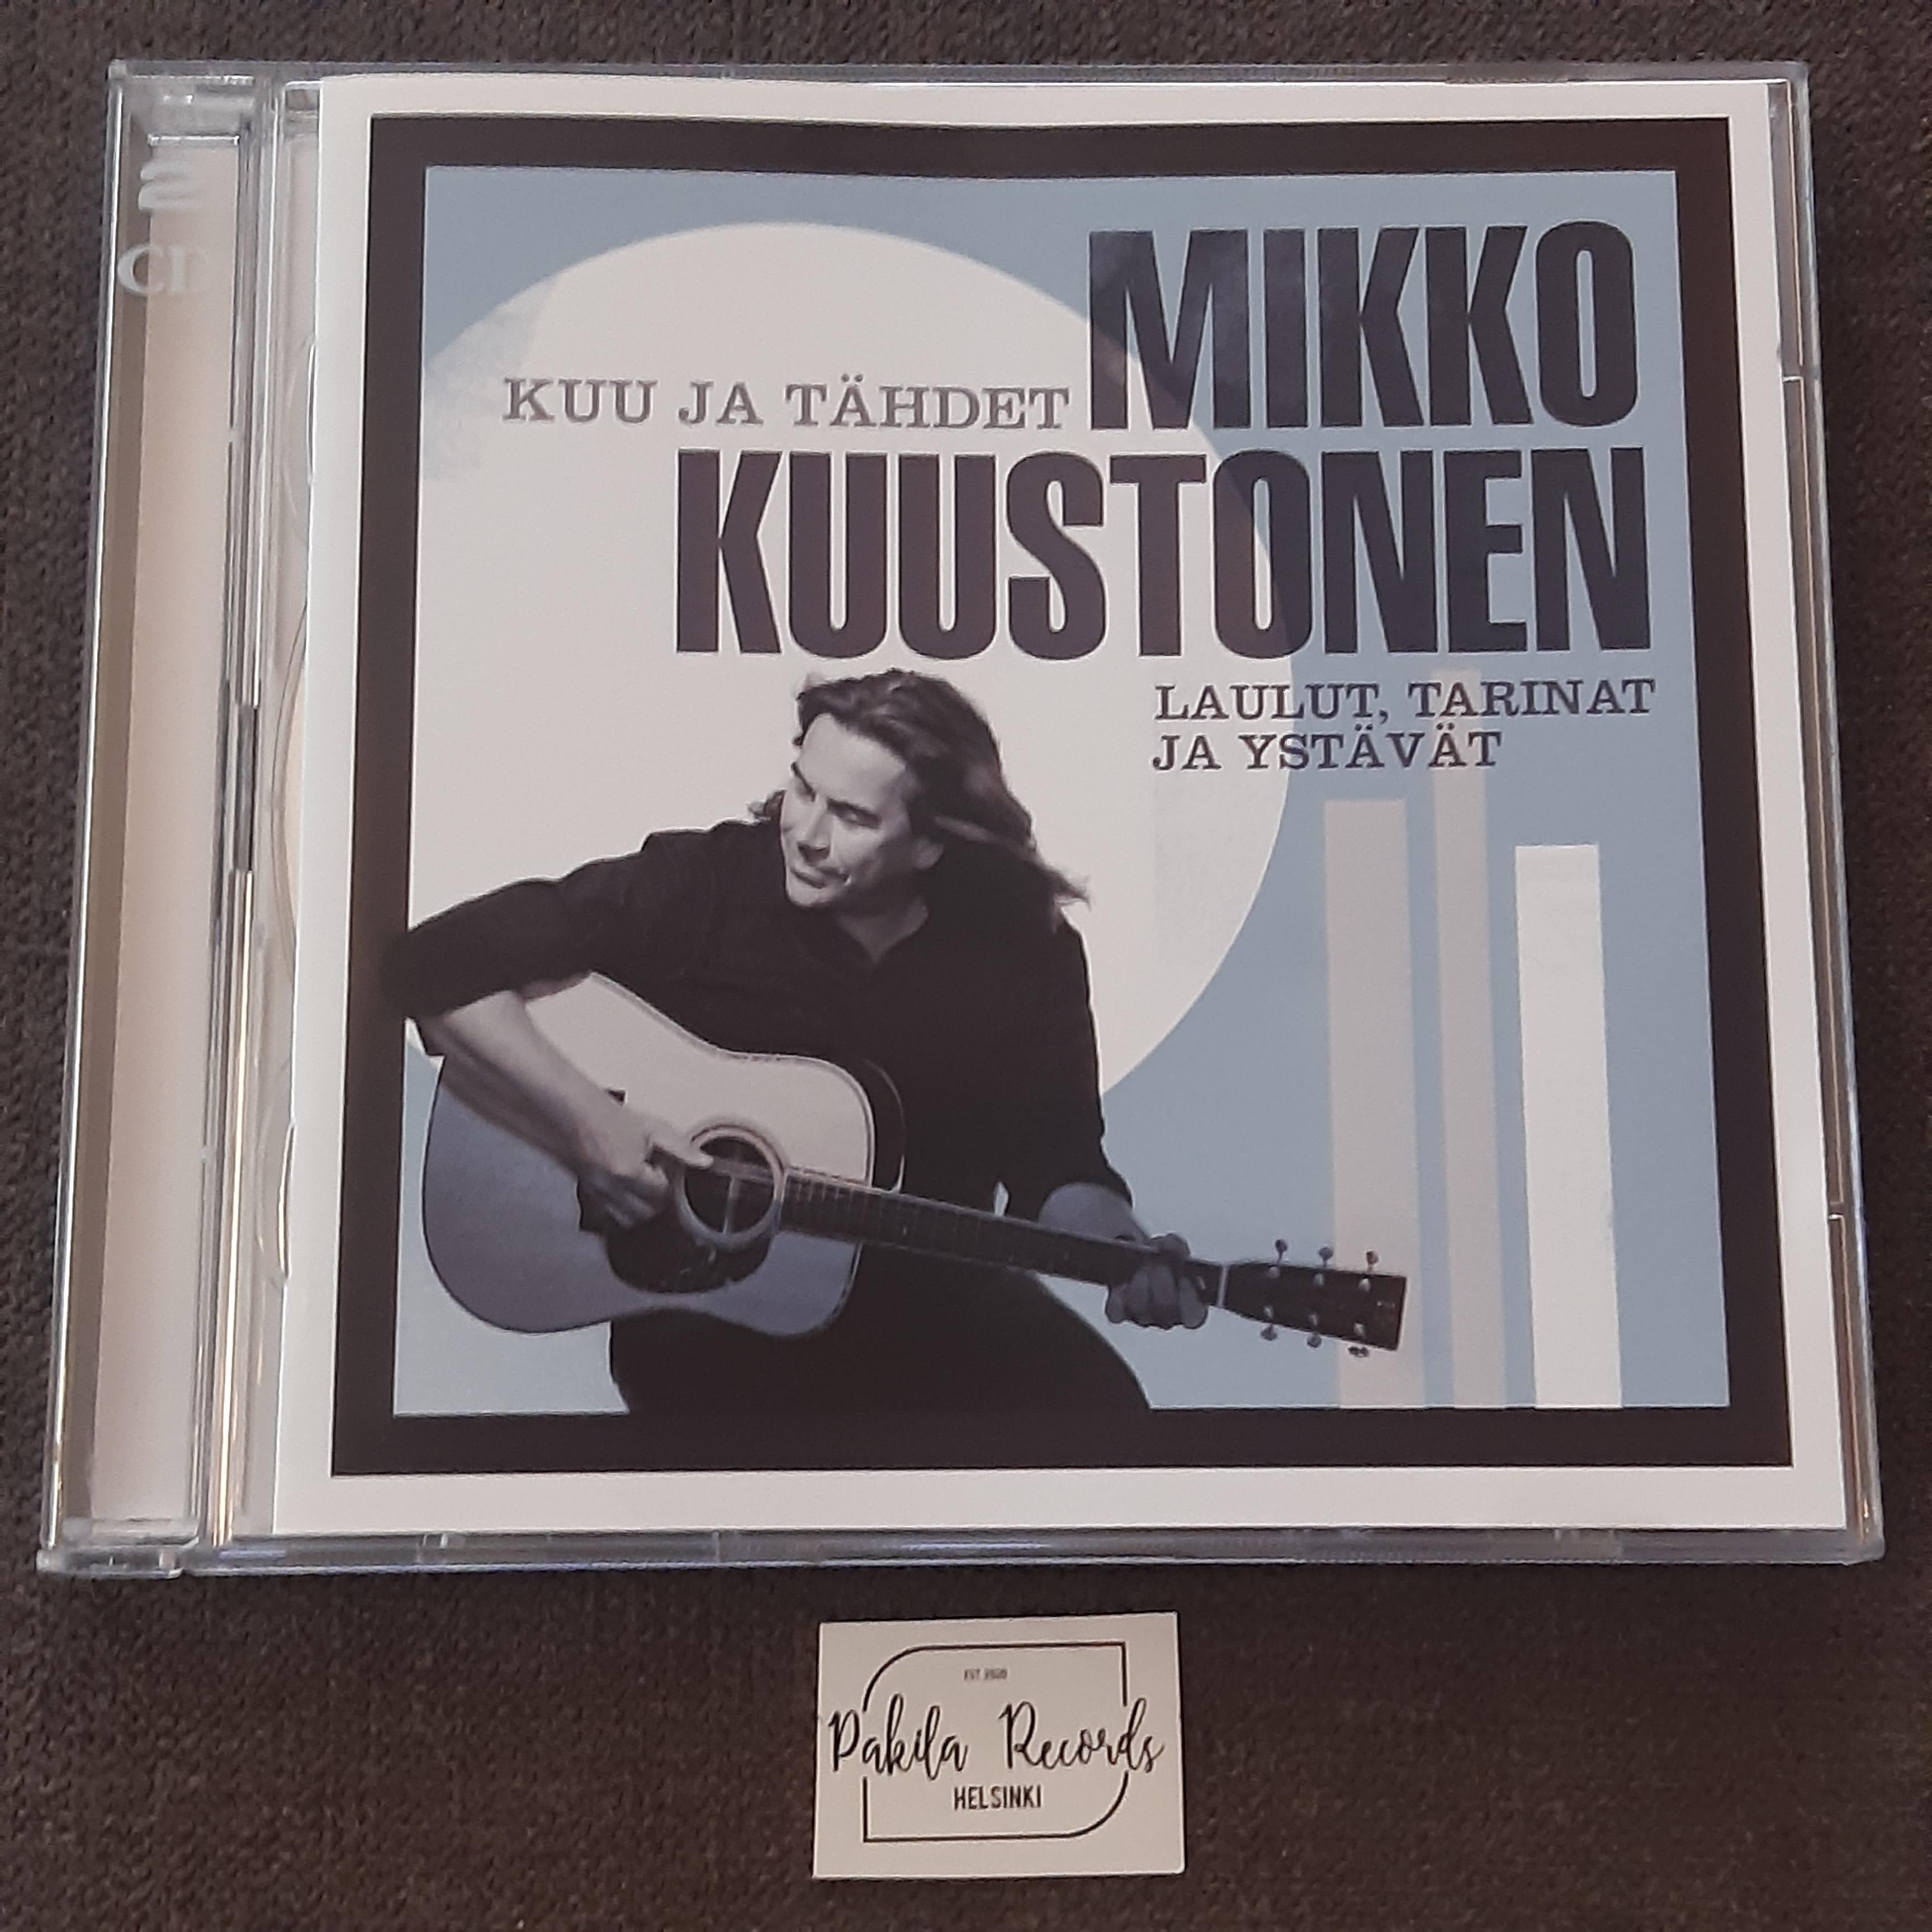 Mikko Kuustonen - Kuu ja tähdet, Laulut, tarinat ja ystävät - 2 CD (käytetty)